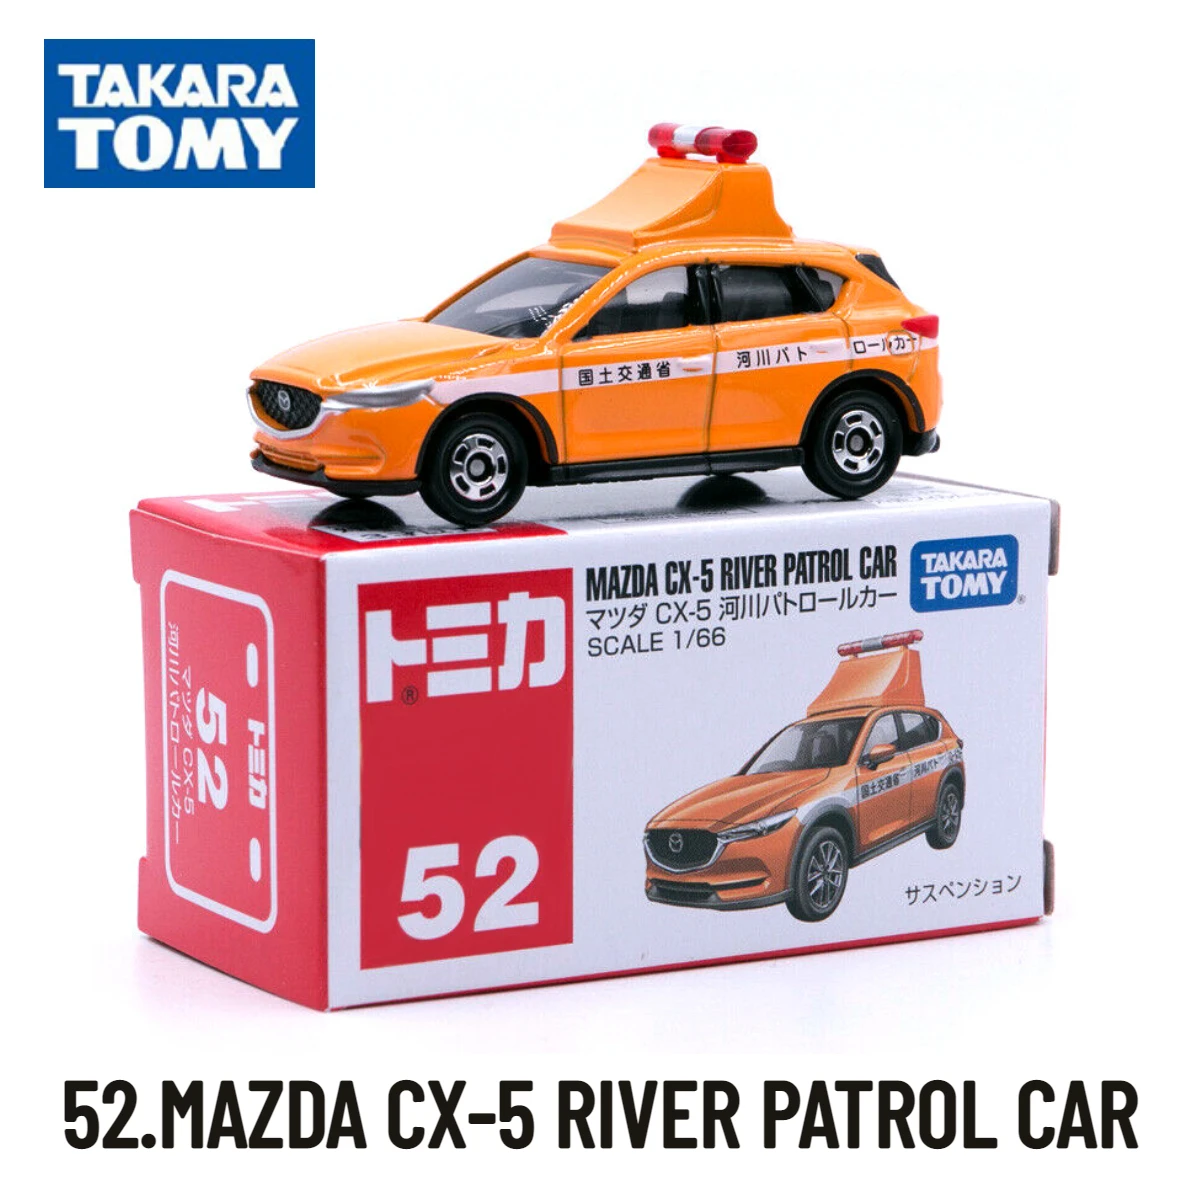 

Takara Tomy Tomica Cars 31-60, Scale Model 52.MAZDA CX-5 RIVER PATROL Replica, Kids Room Decor Xmas Gift Toys for Baby Boys